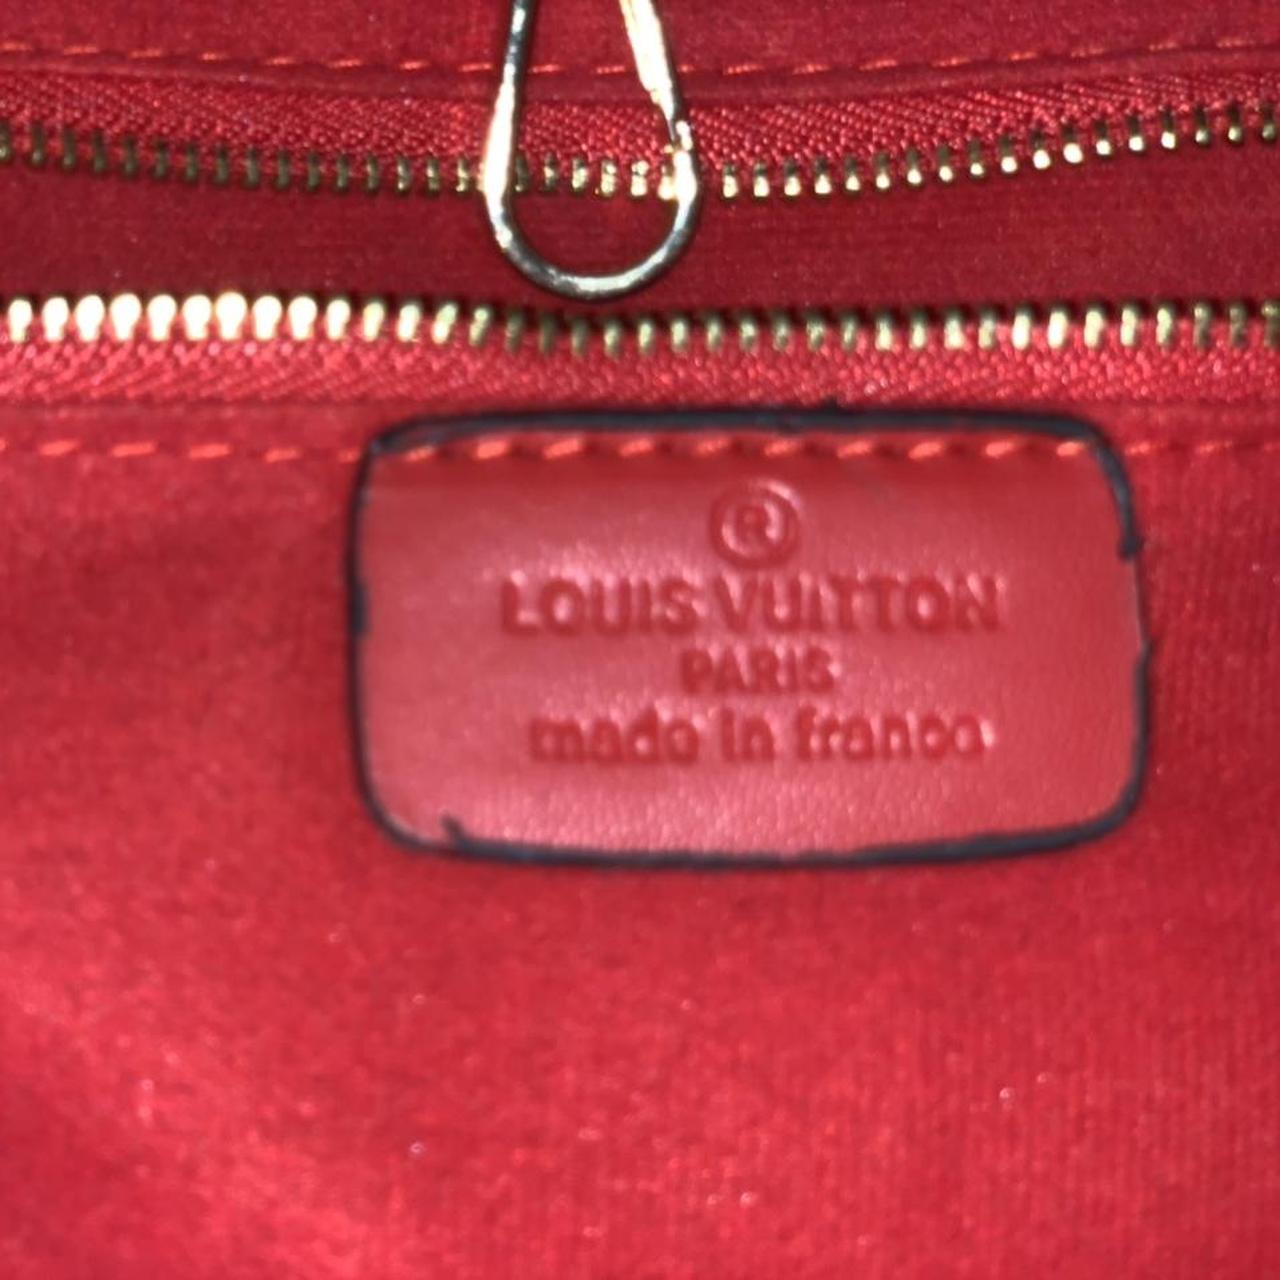 Brand new Jungle Louis Vuitton beach pouch. Very - Depop